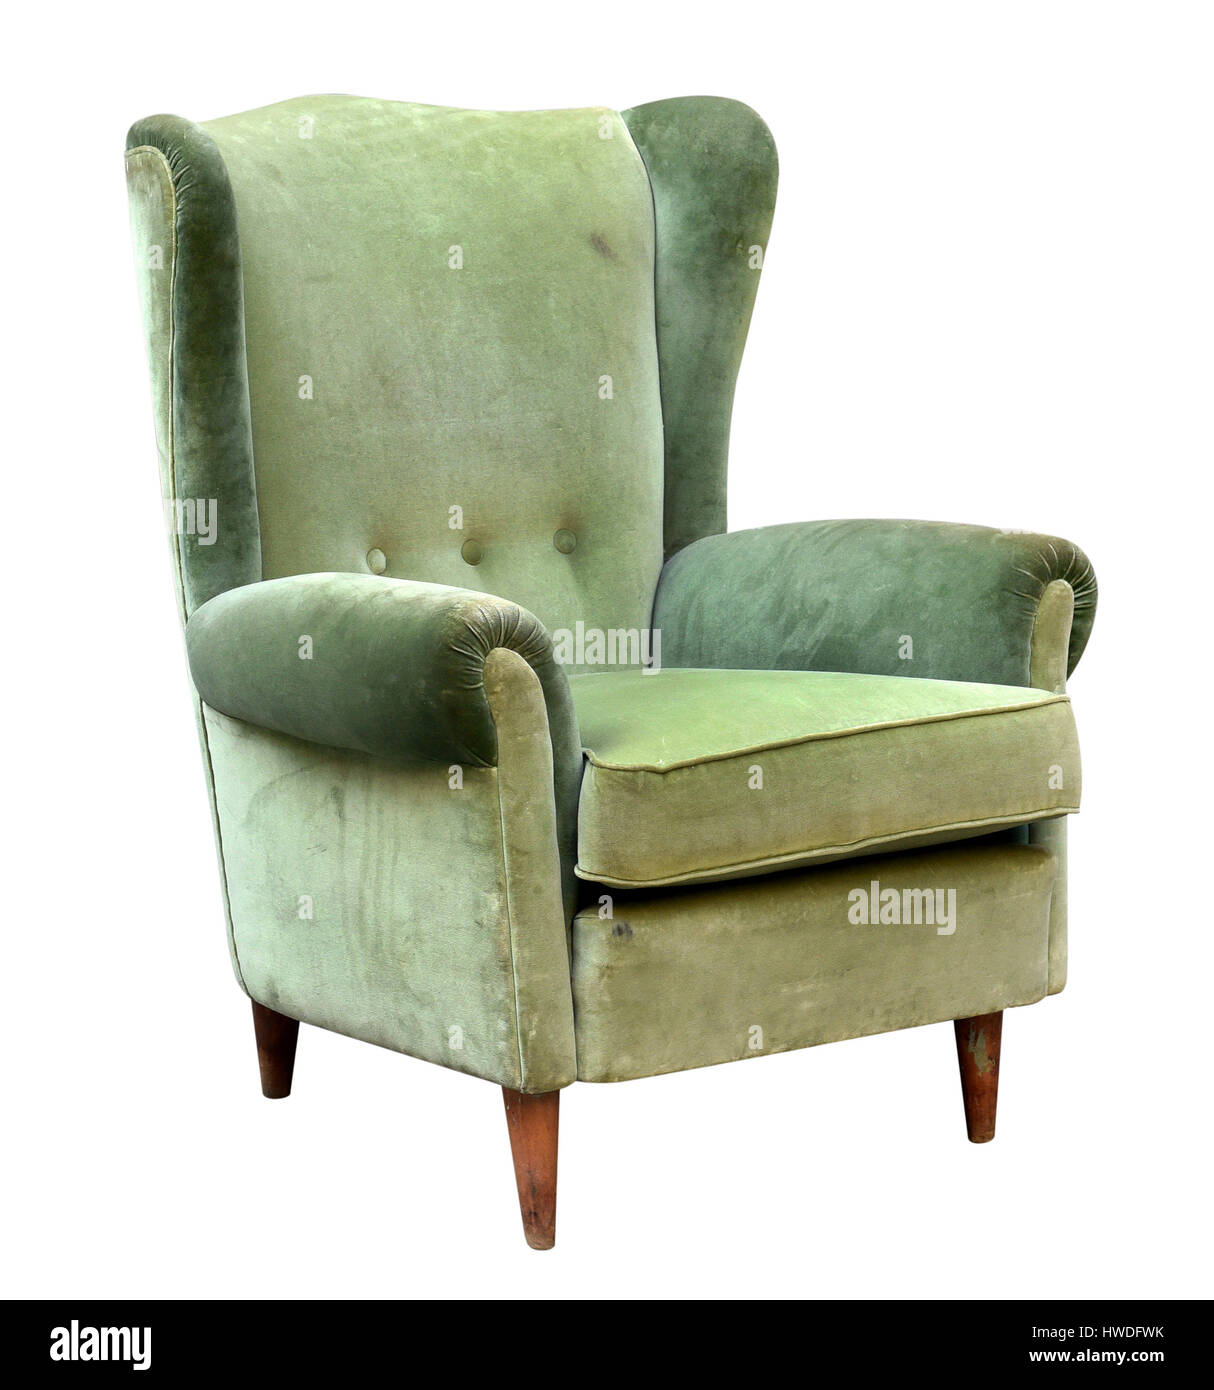 Vintage gepolstert grünem Samt Sessel mit einem Hochdecker Rücken isoliert auf weiß in einer drei-Viertel-Ansicht Stockfoto